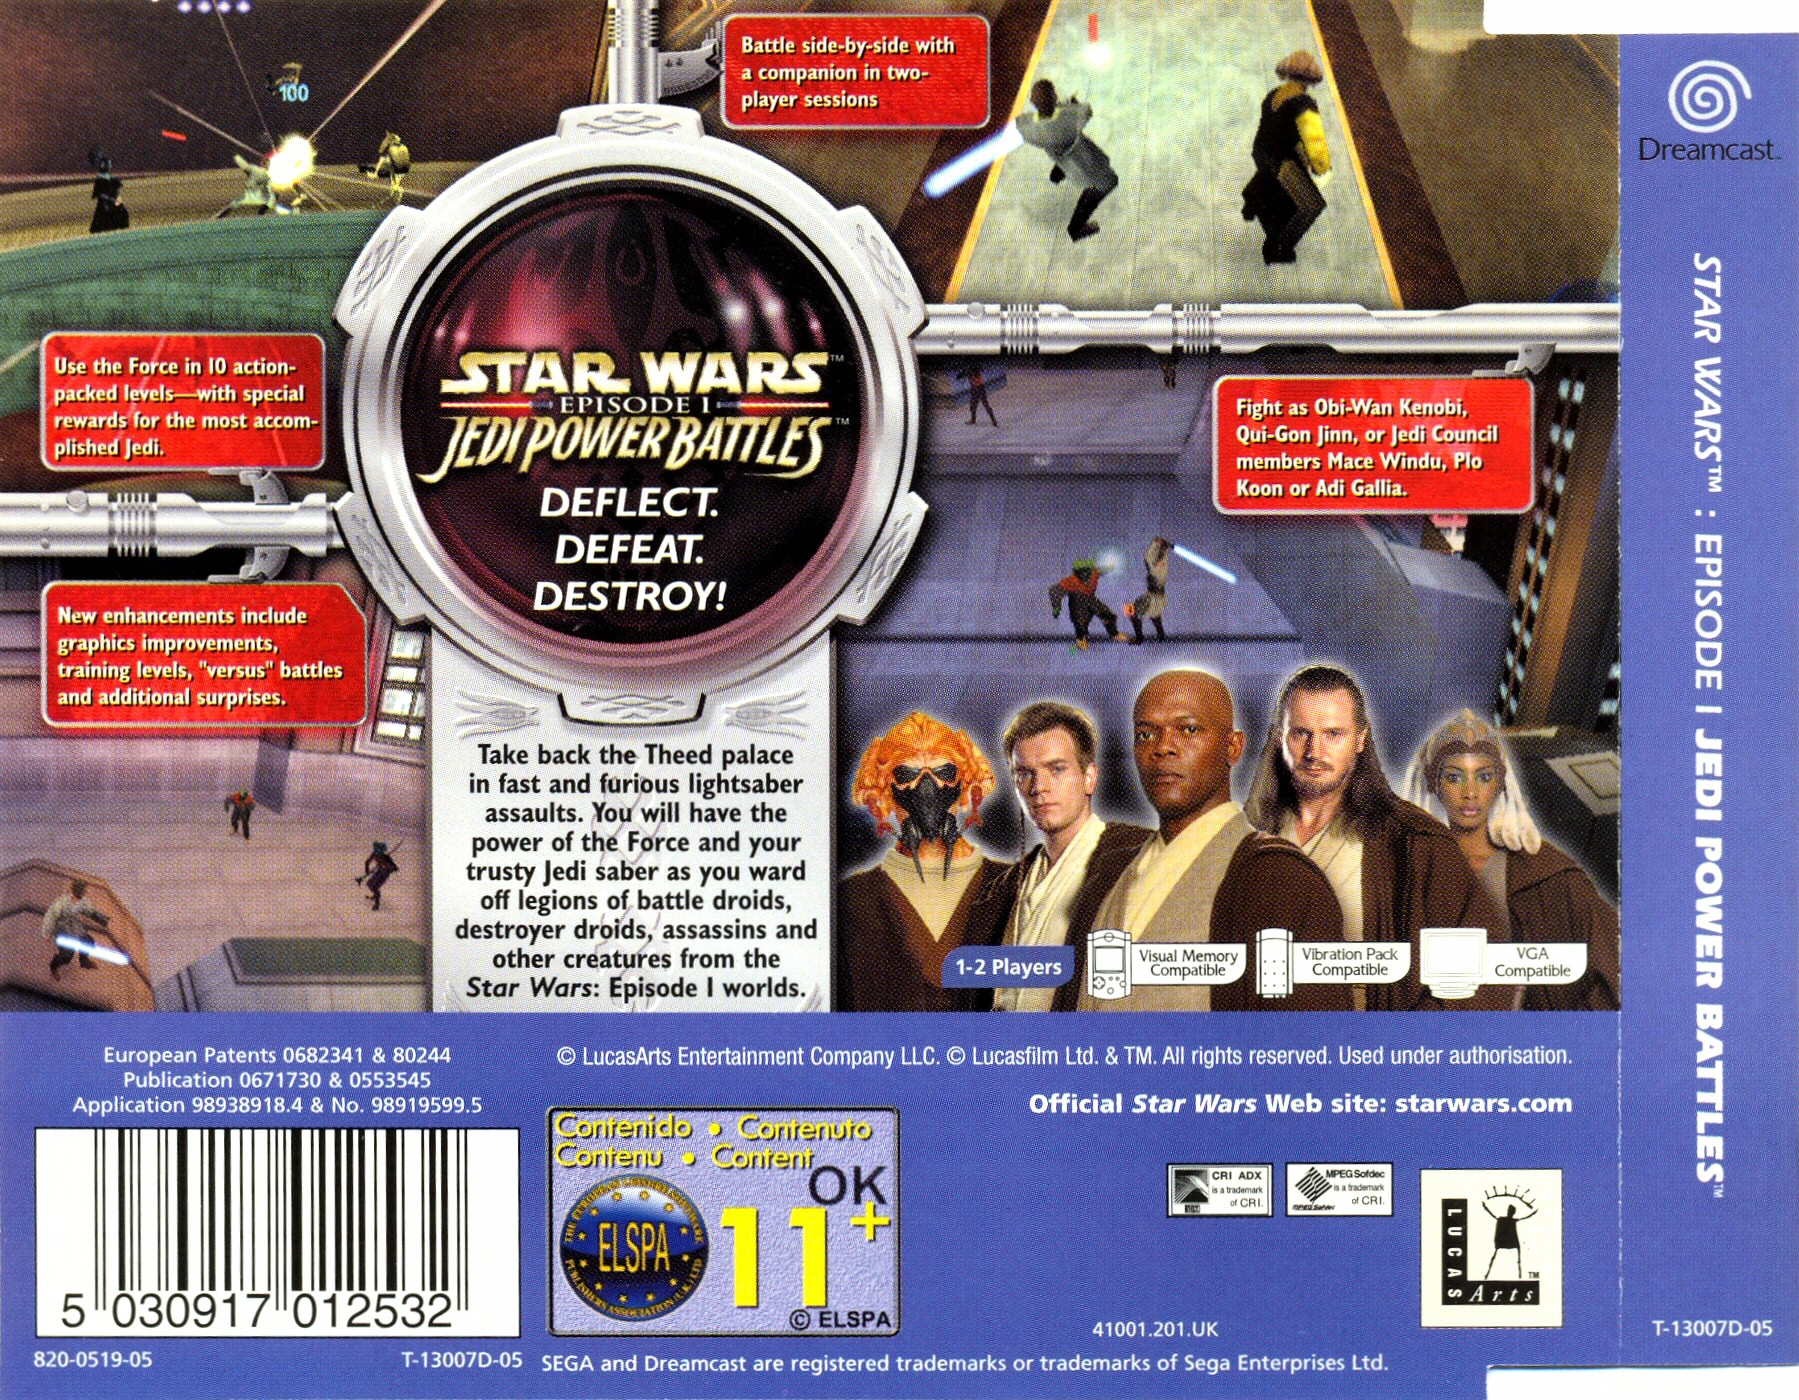 Star wars jedi power. Star Wars Episode 1 Jedi Power Battles. Sega Dreamcast Star Wars Episode 1. Star Wars Episode i Jedi Power Battles. Star Wars Jedi Power Battles ps1.